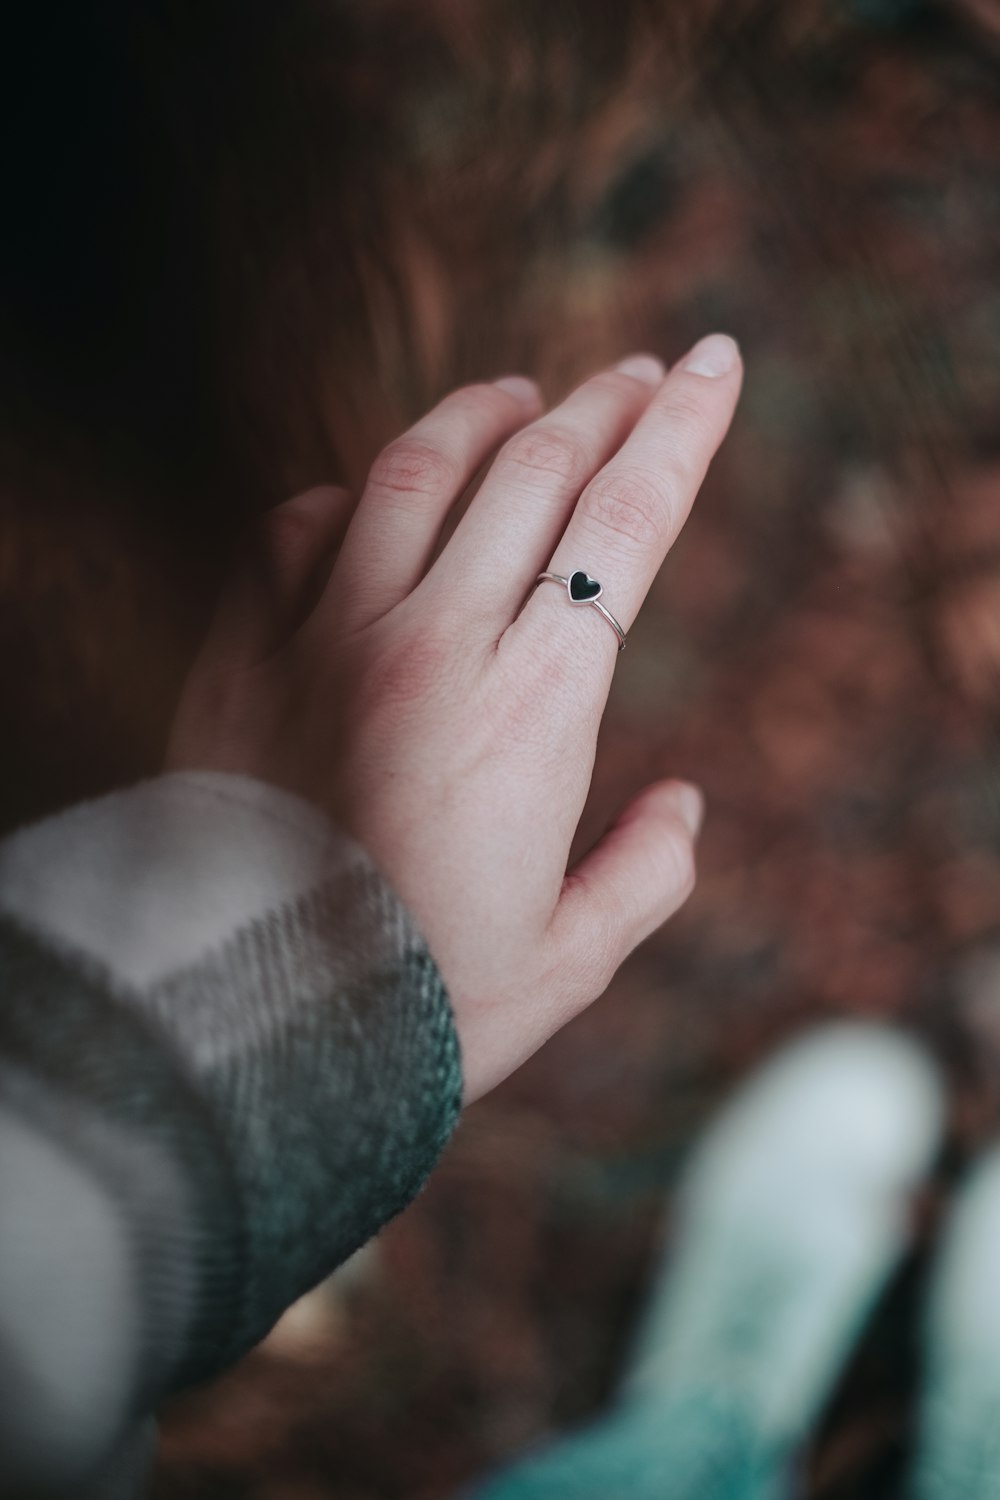 pequeño insecto blanco y negro en la mano de las personas